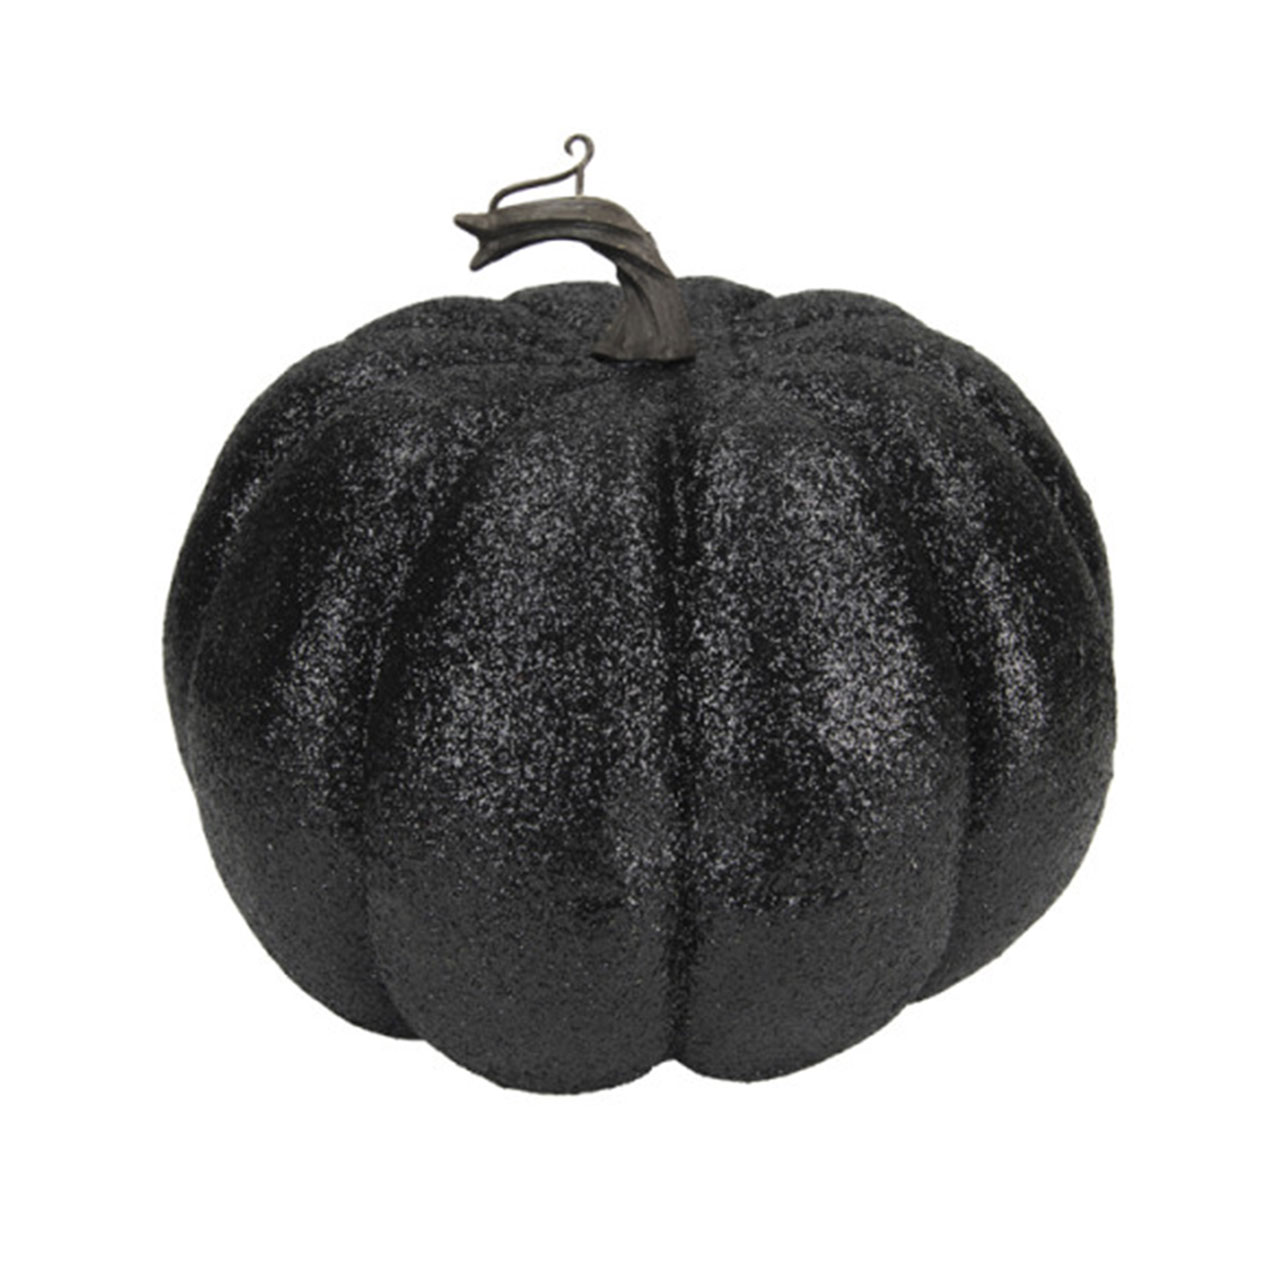 Decoration - Black Glitter Pumpkin (S)